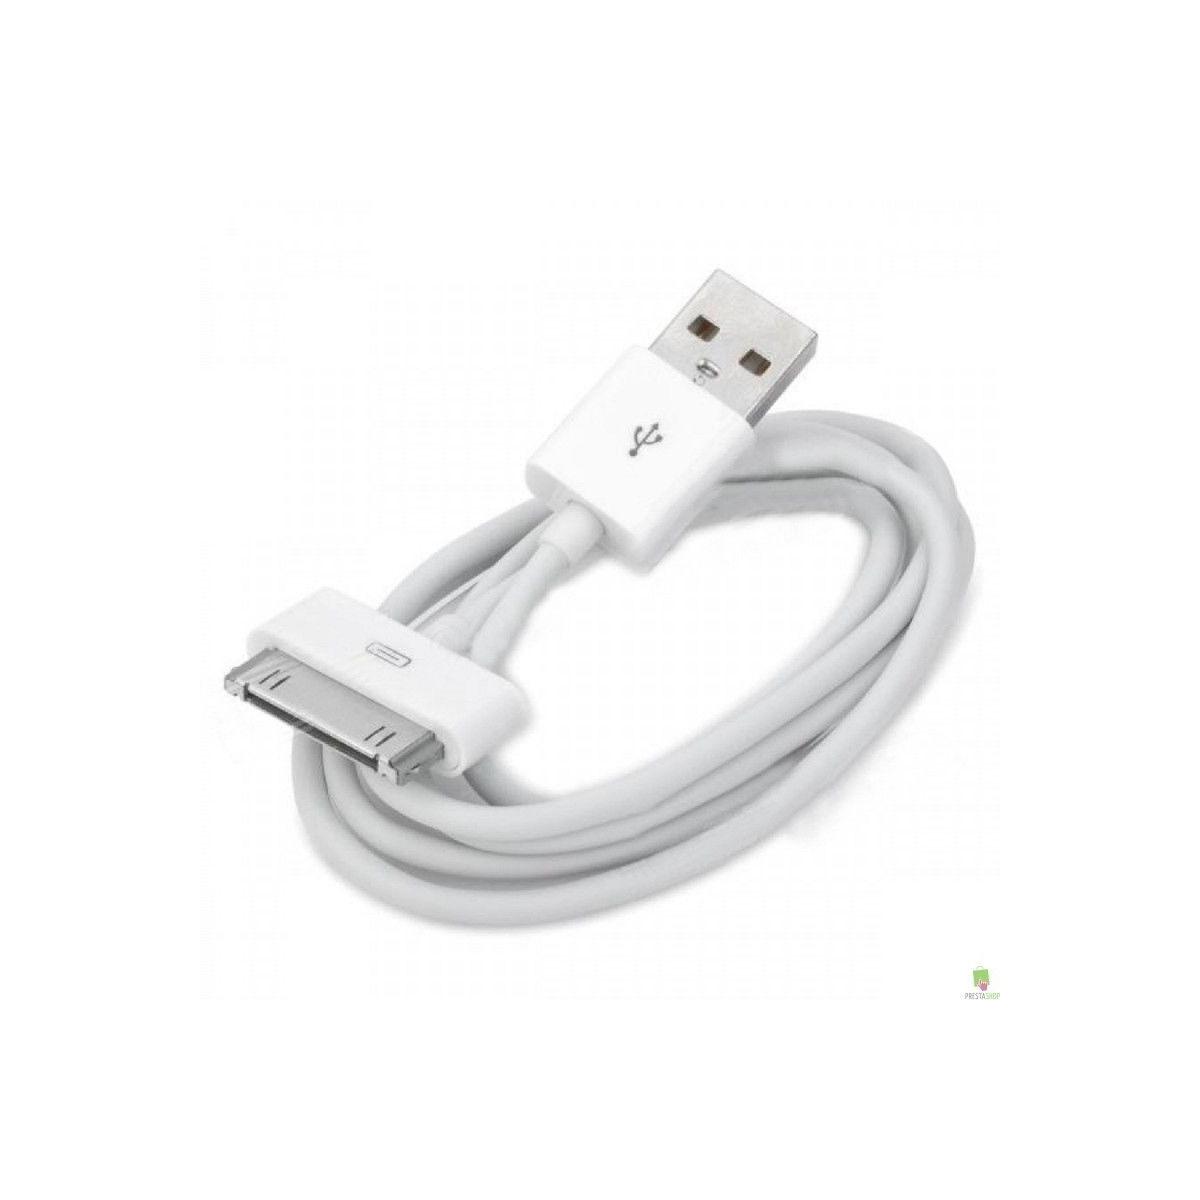 USB carga datos para iPhone 3 3g 3gs 4 4g 4s iPod iPad